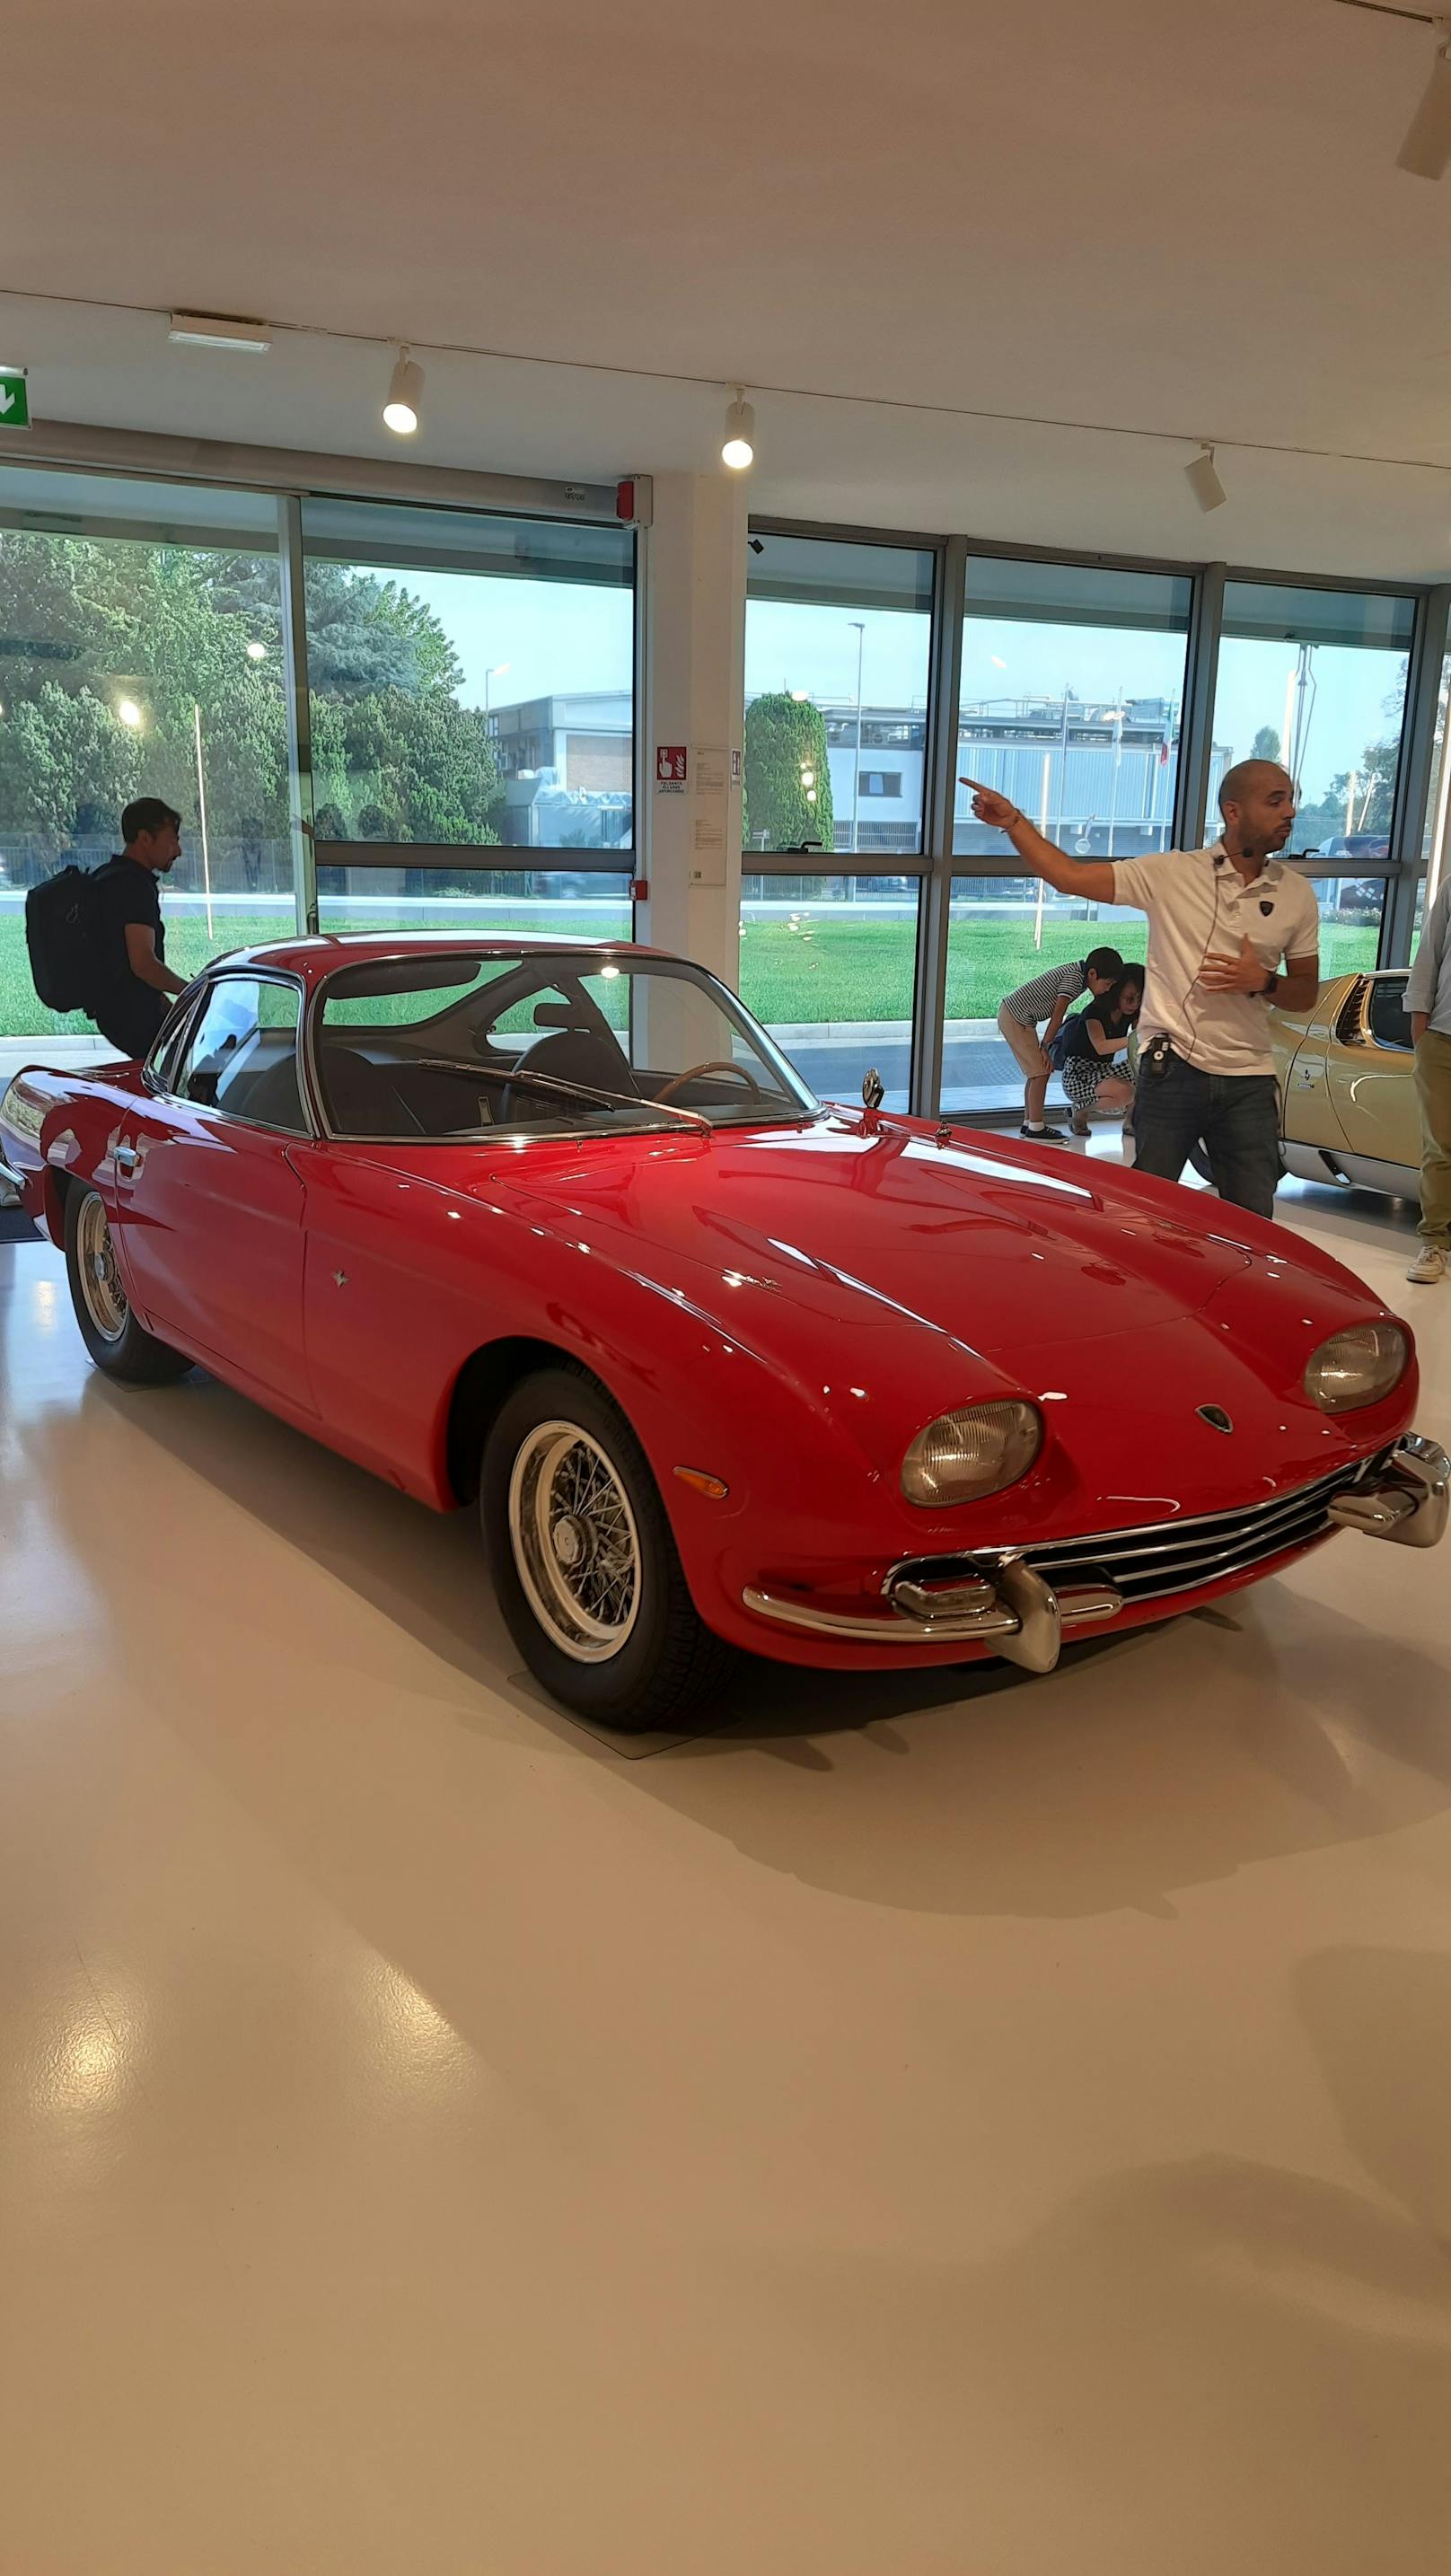 Hier begann Lamborghinis Geschichte im Automobilbau: 1963 startete man mit Prototypen. Ein Jahr später kam der 350 GT (im Bild) auf den Markt. In drei Jahren endstanden 120 Exemplare. Leistung: 280 PS aus einem V12-Motor. Top-Speed: 260 km/h.